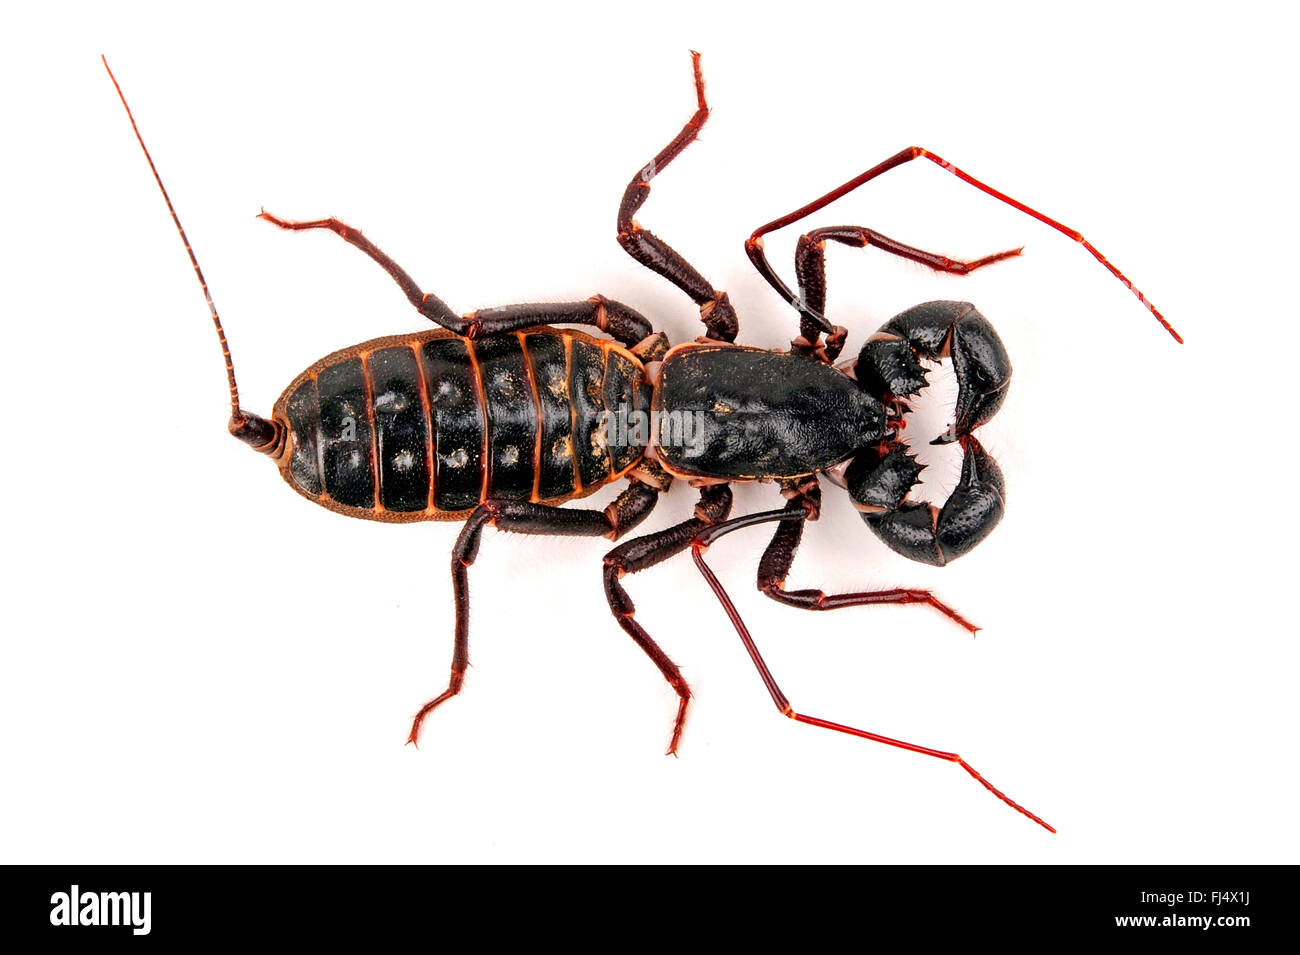 Giant vinegaroon, Whip scorpion (Mastigoproctus giganteus), cut-out Stock Photo